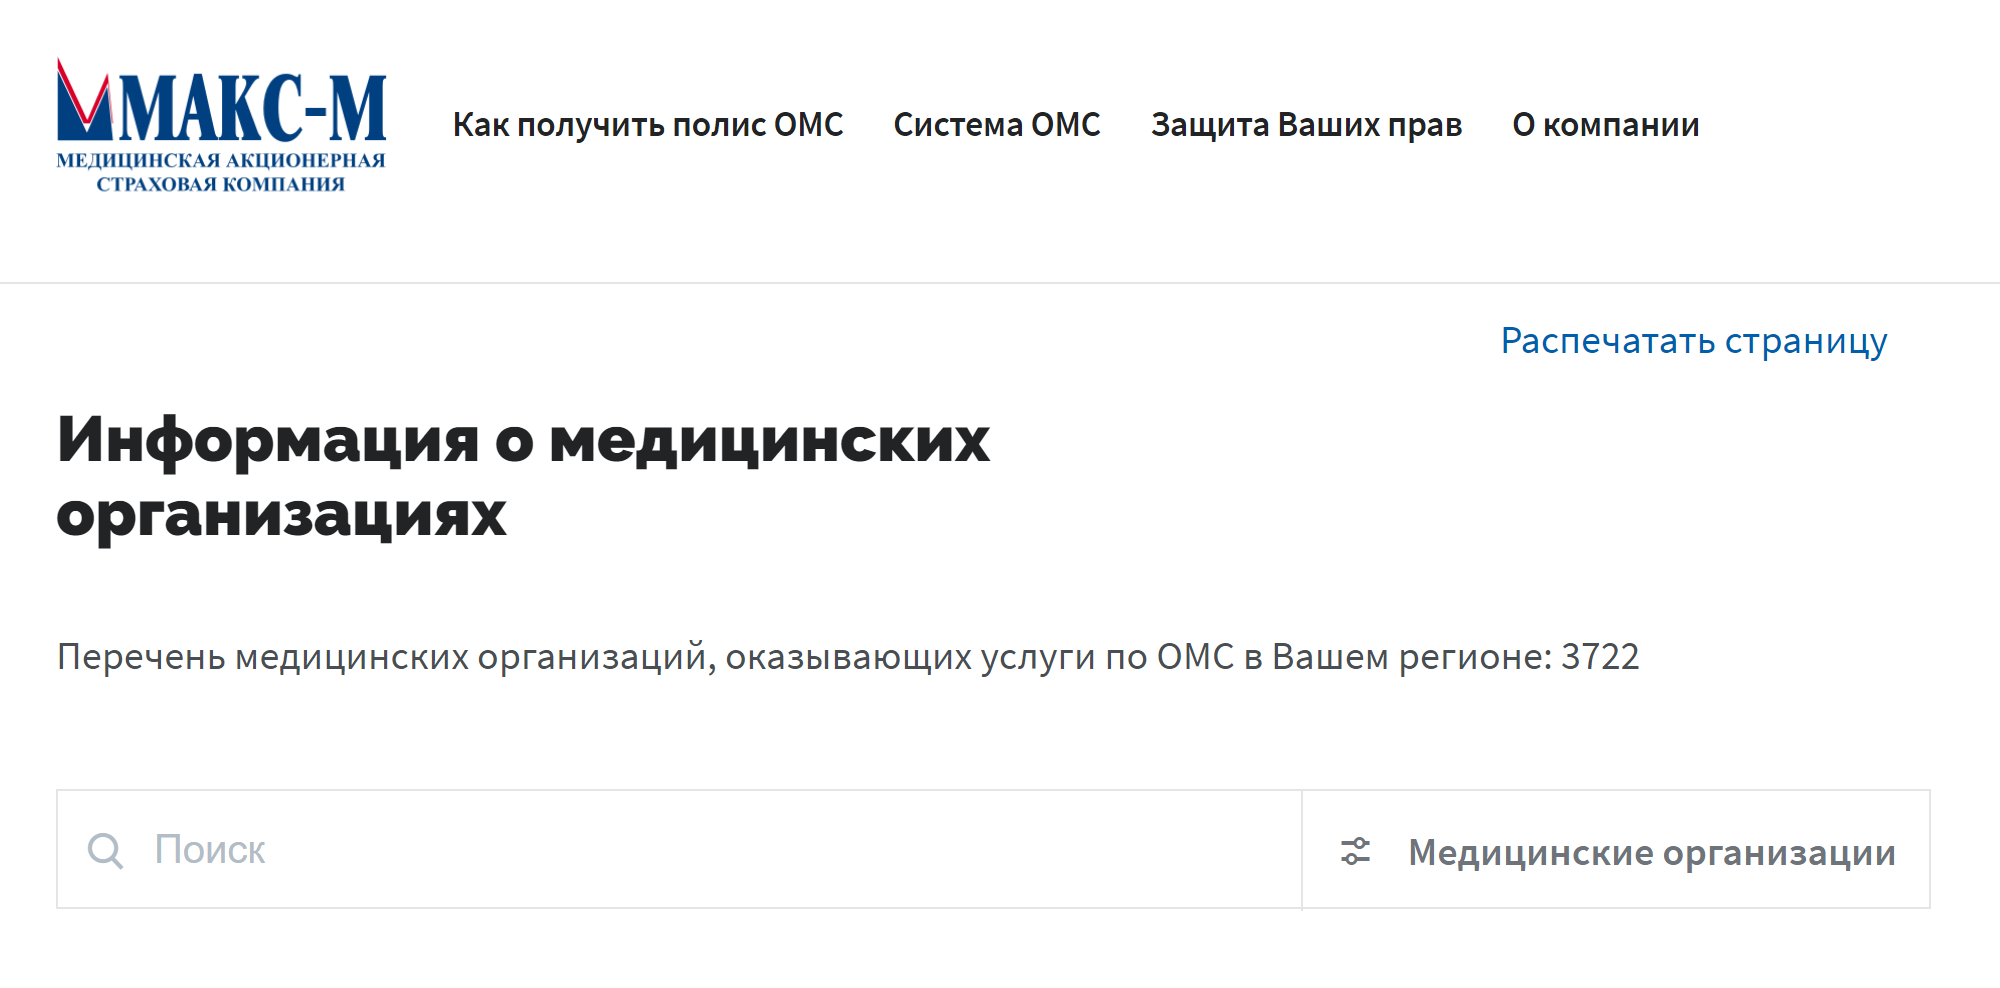 А это список медицинских организаций на сайте страховой компании «Макс⁠-⁠М». Источник: makcm.ru